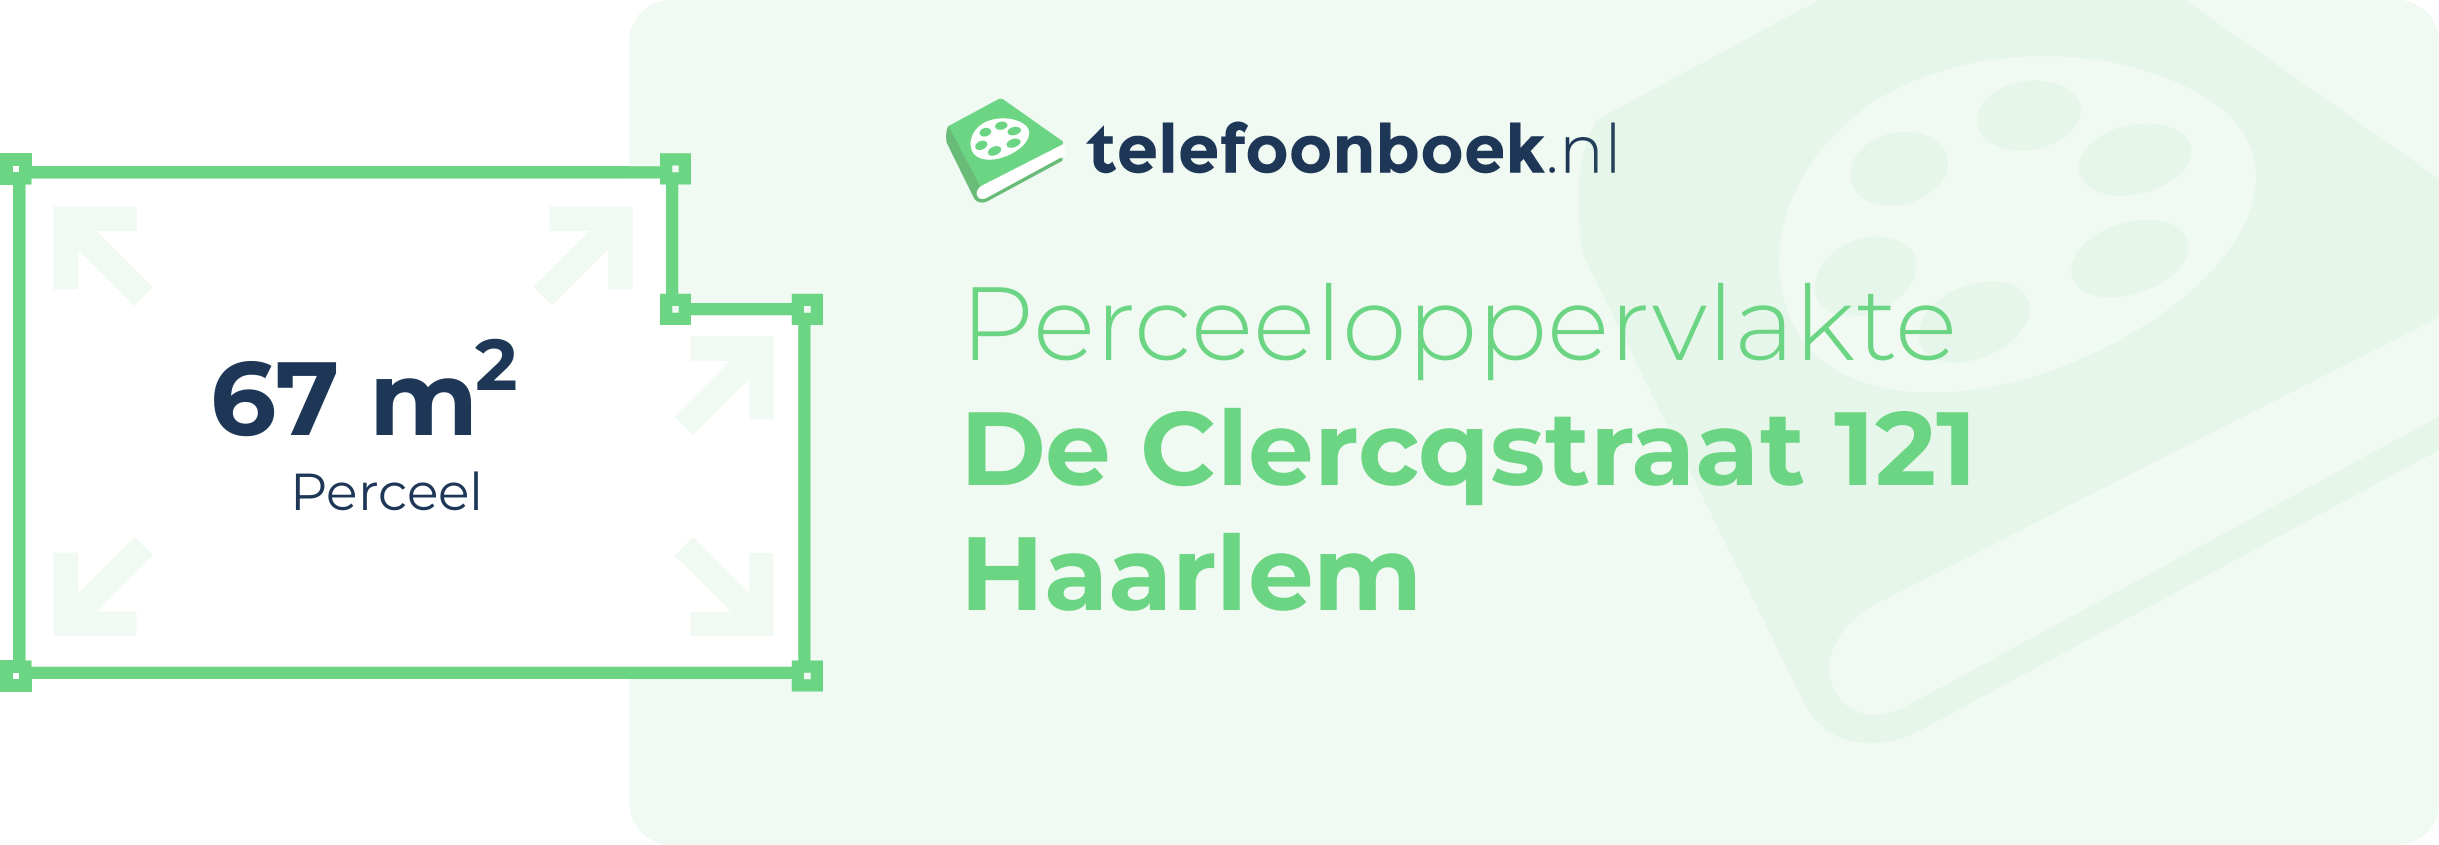 Perceeloppervlakte De Clercqstraat 121 Haarlem